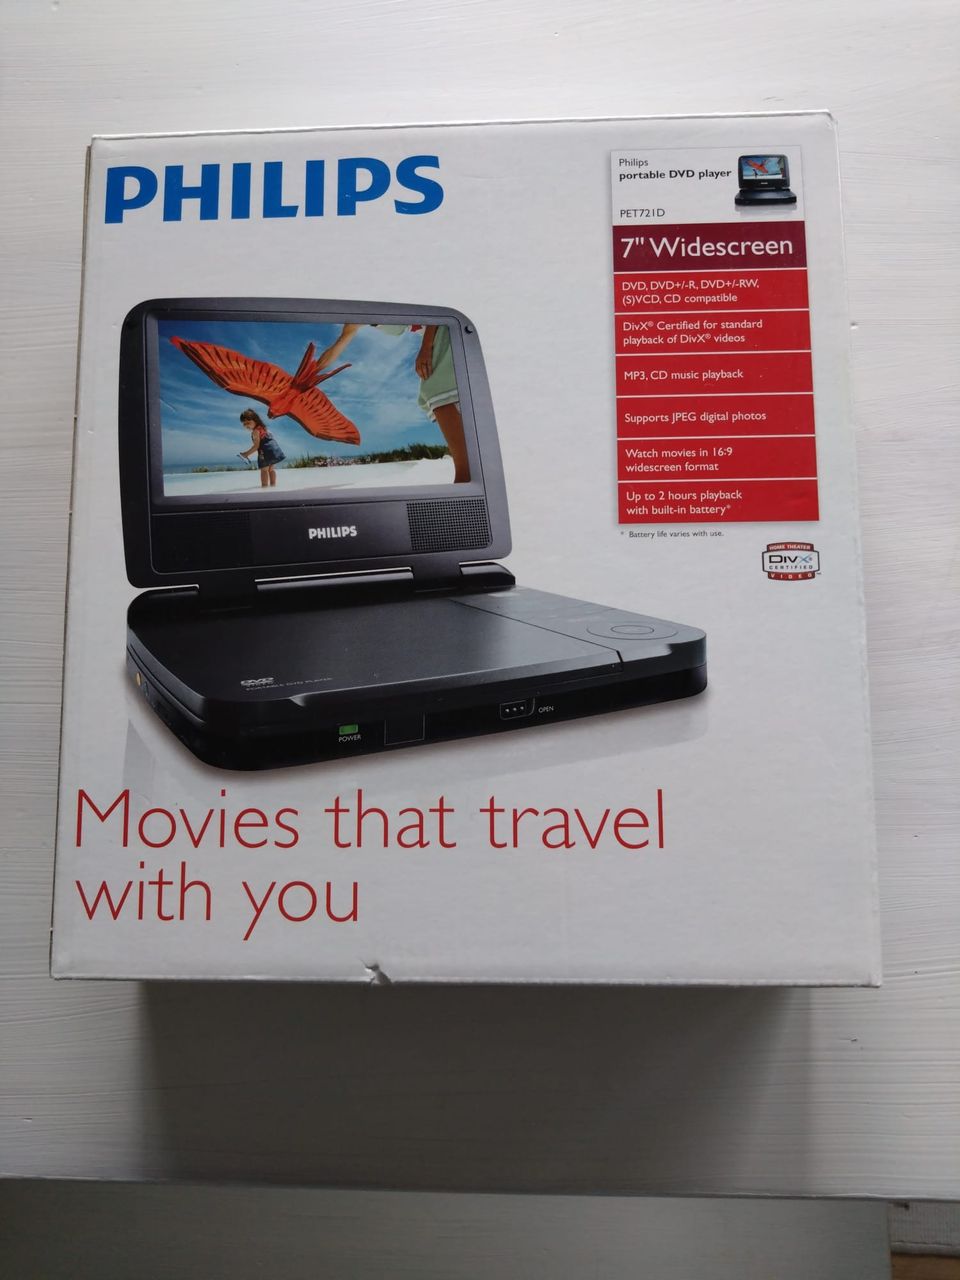 Philips pet721d kannettava dvd soitin.